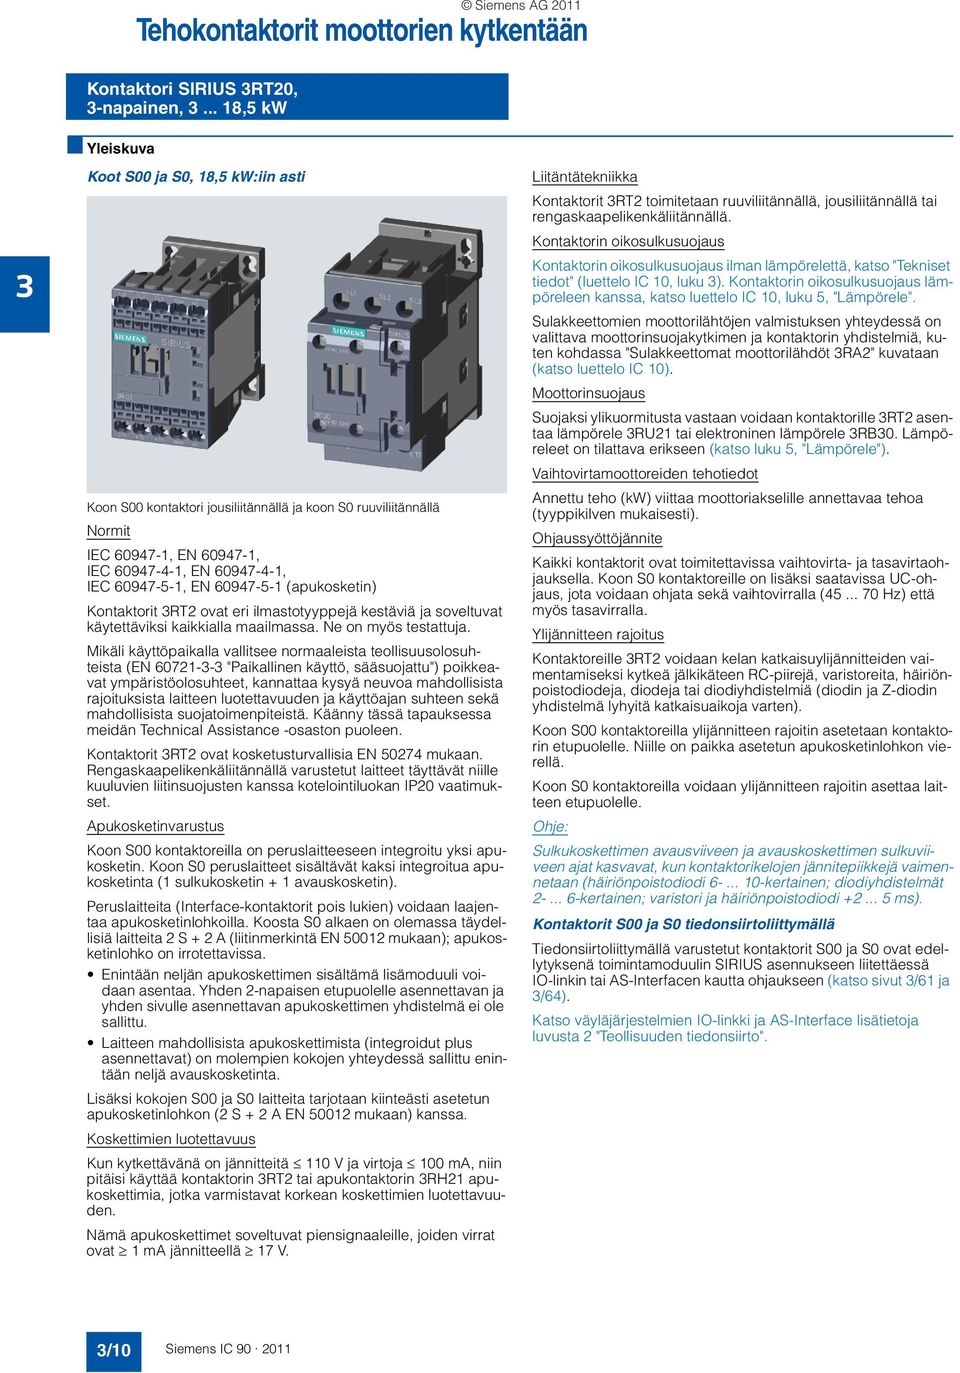 60947-5-1 (apukosketin) Kontaktorit RT2 ovat eri ilmastotyyppejä kestäviä ja soveltuvat käytettäviksi kaikkialla maailmassa. Ne on myös testattuja.